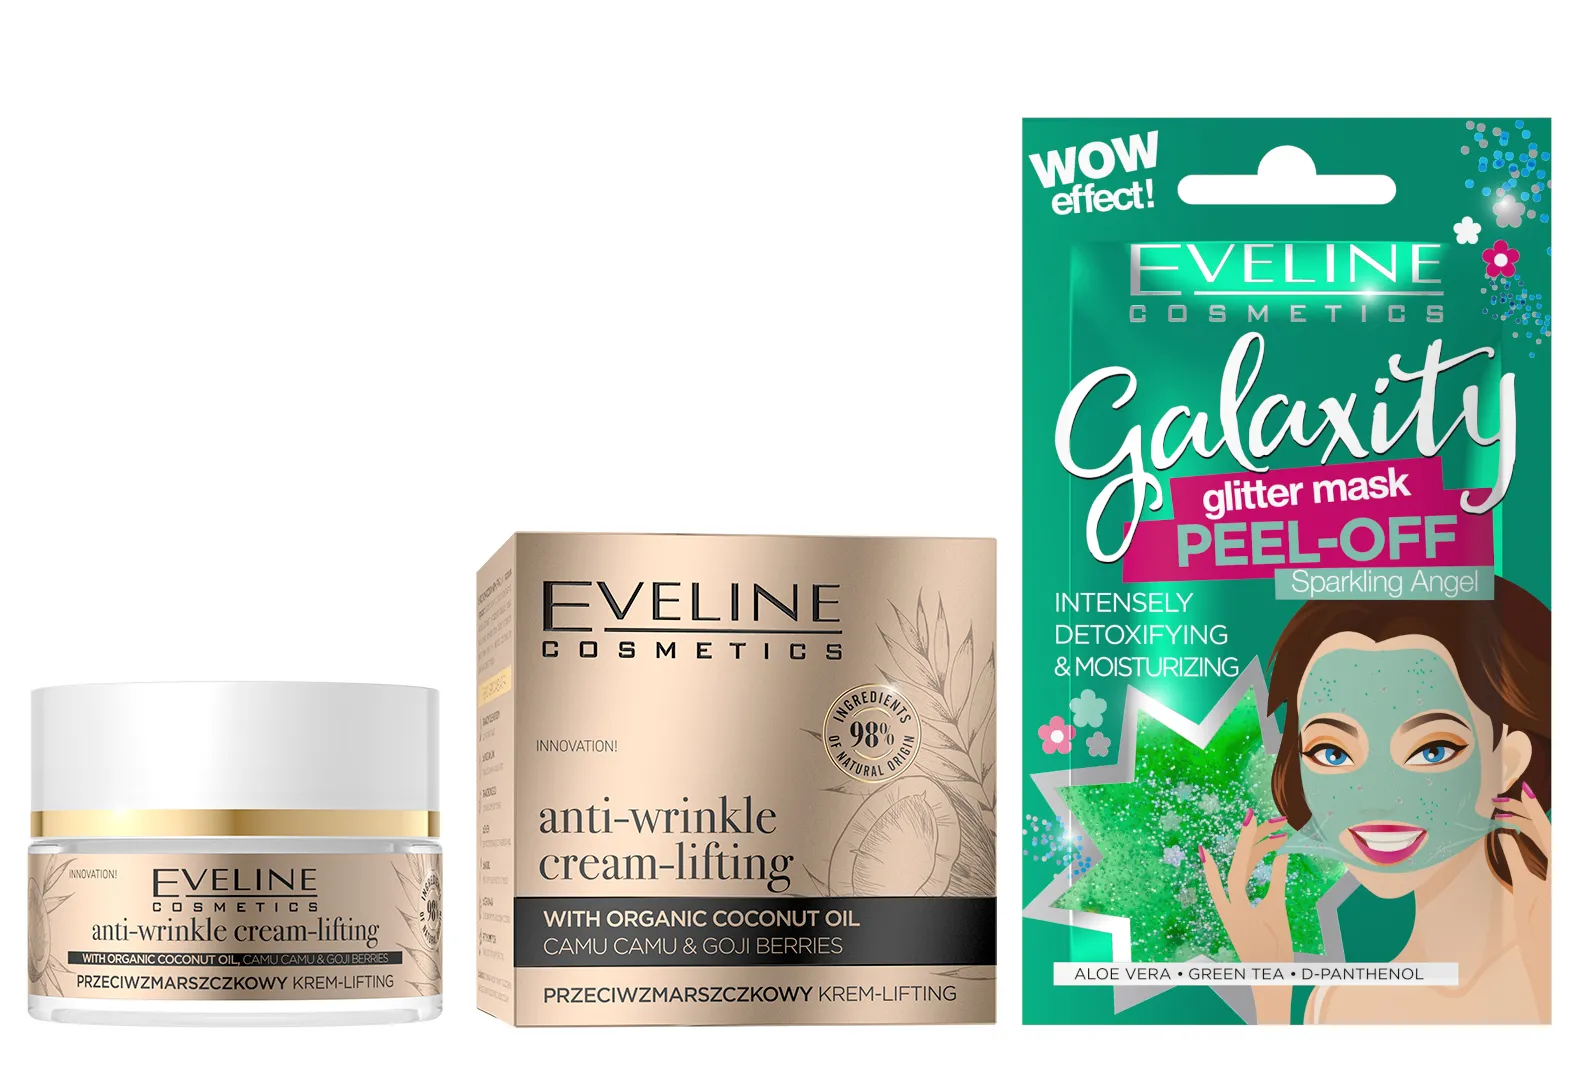 Eveline Cosmetics Organic Gold przeciwzmarszczkowy krem-lifting, 50 ml + Eveline Cosmetics Detoksykująco-nawilżająca maseczka peel-off z połyskującymi drobinkami, 10 ml